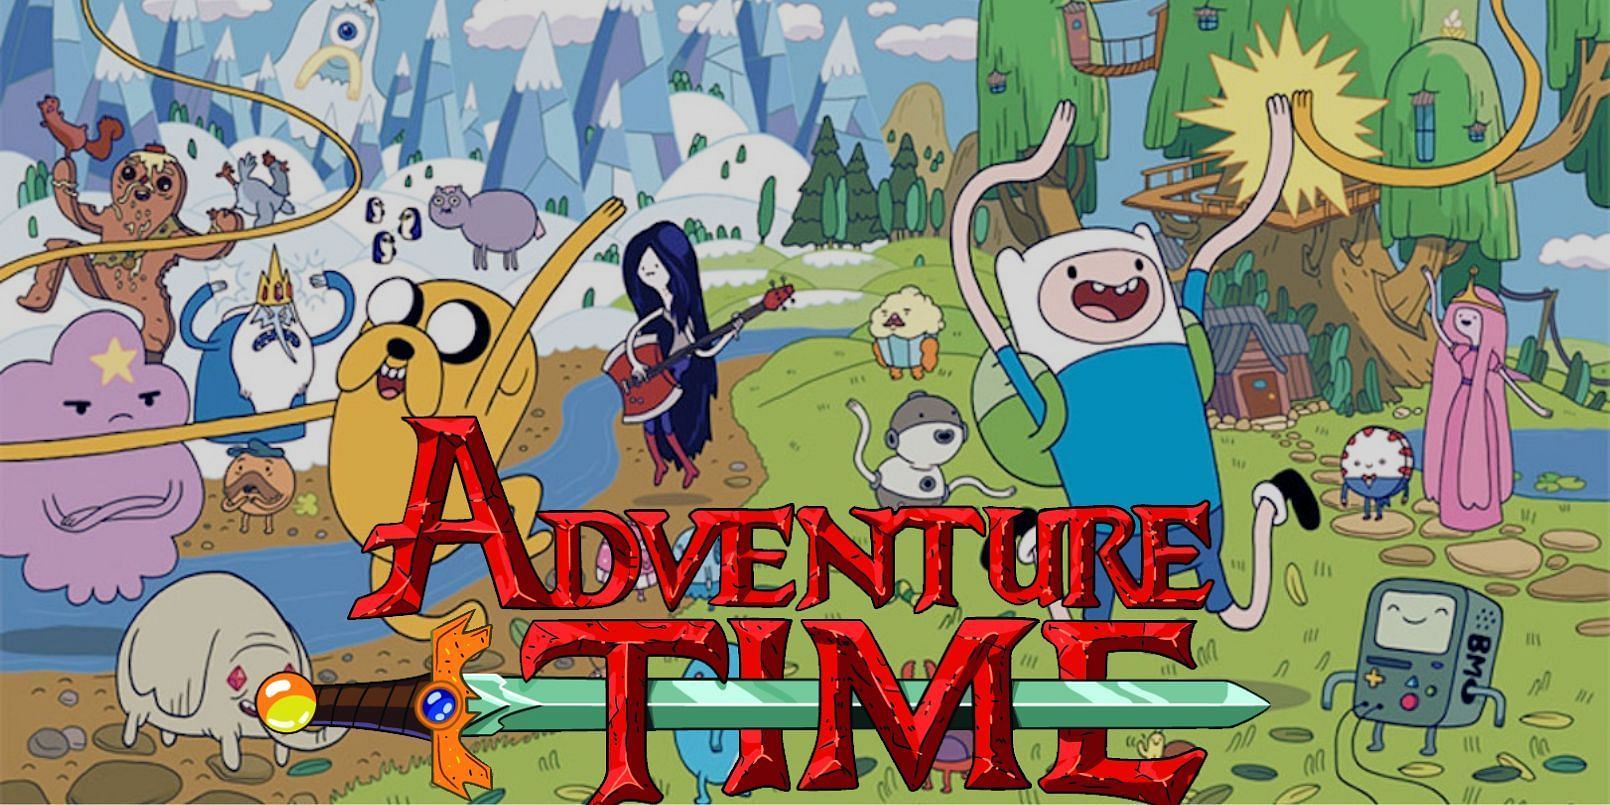 bill deppen recommends Adventure Time Watch Cartoons Online